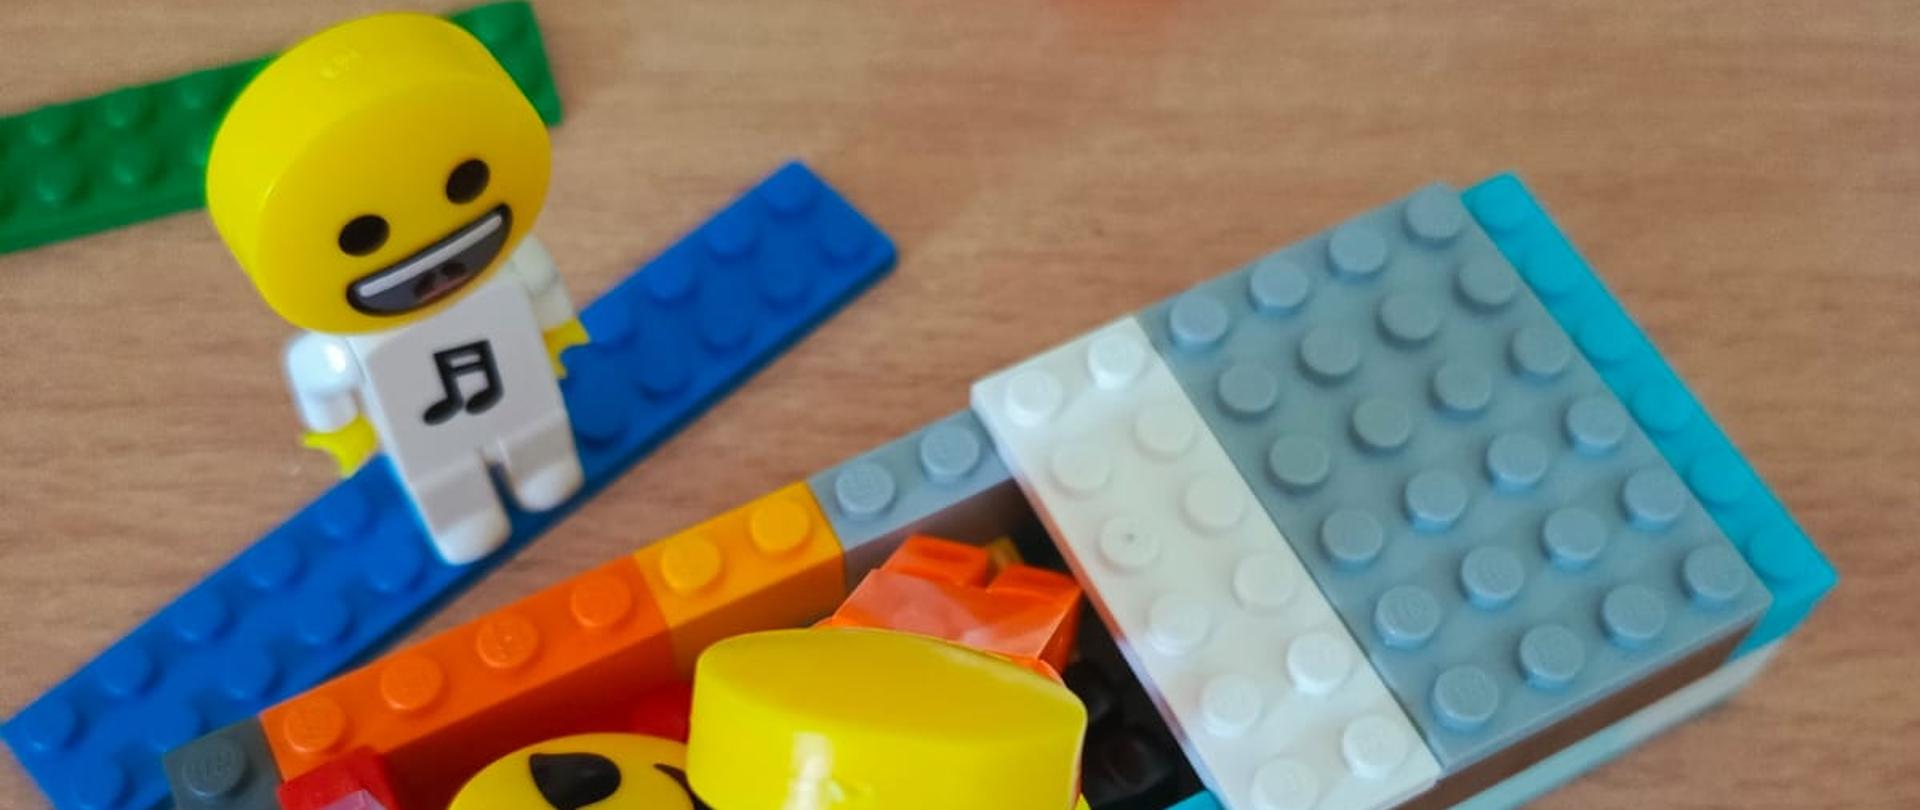 Wykorzystanie klocków LEGO 